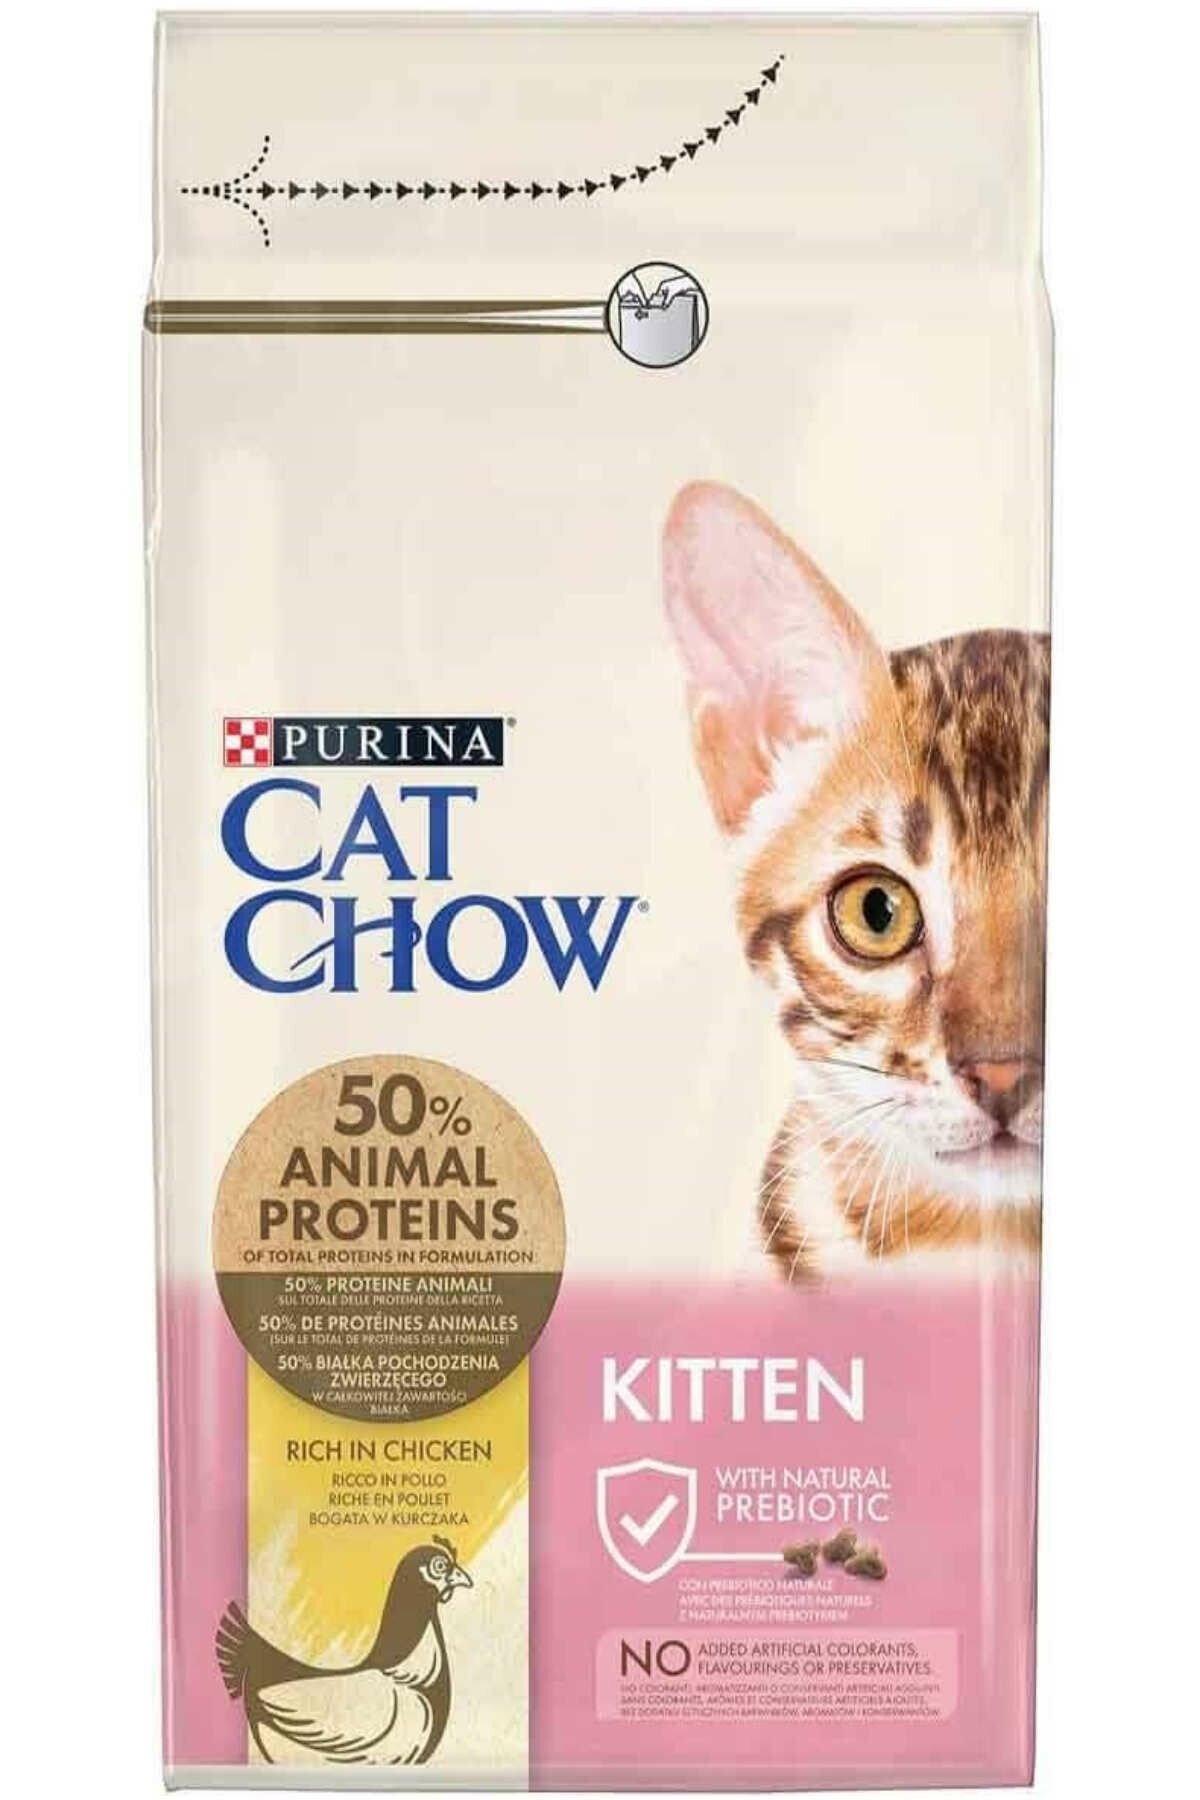 Purina Cat Chow Cat Chow Kıtten Chıcken And Rıce 15kg